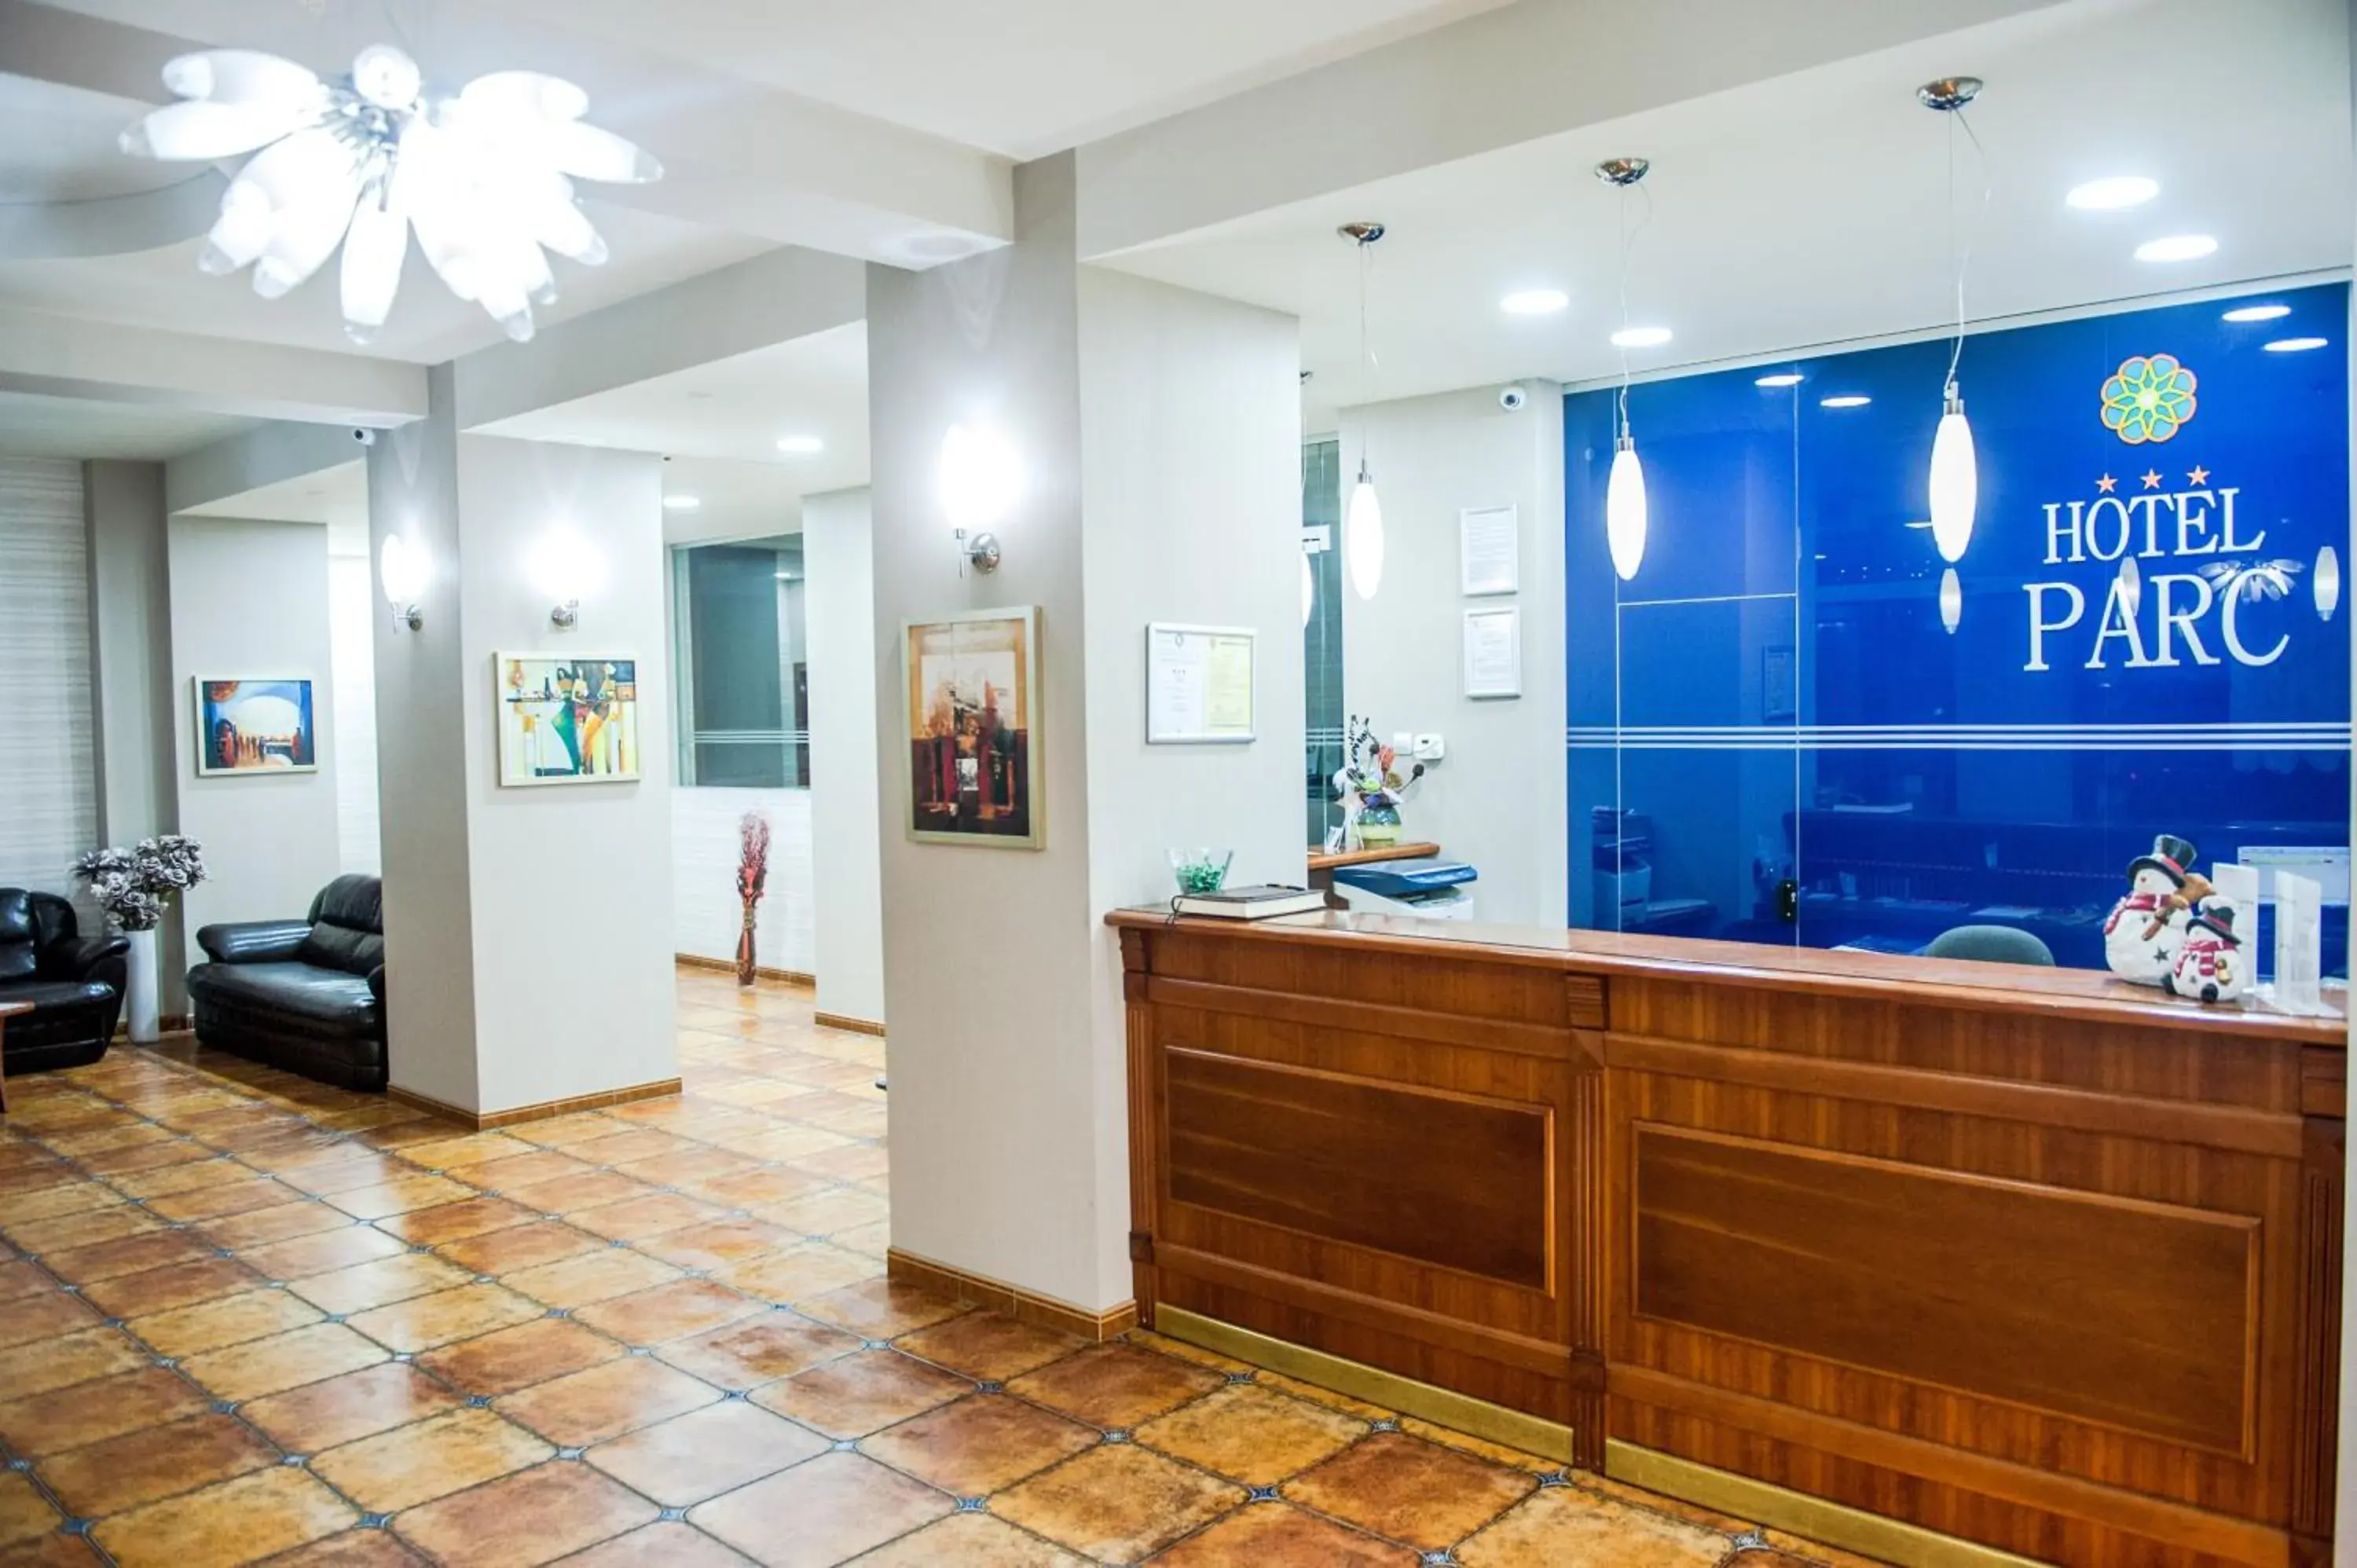 Lobby or reception, Lobby/Reception in Hotel Parc Sibiu